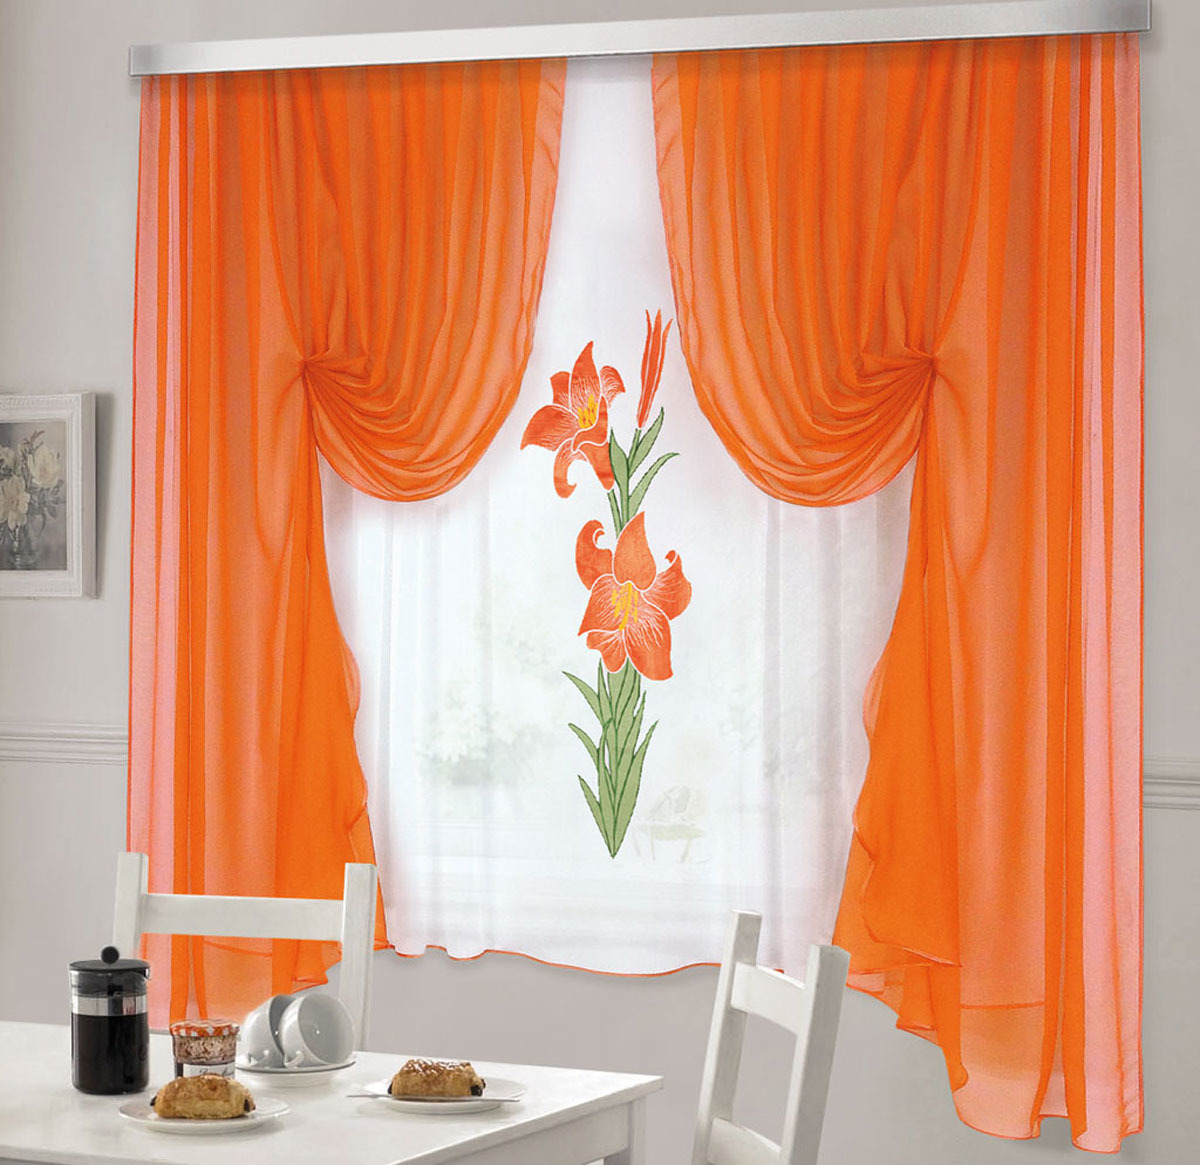 фото Комплект штор для кухни ТД Текстиль "Лилия", на ленте: 2 шторы 180 х 220 см, тюль 140 х 170 см, цвет: оранжевый, белый